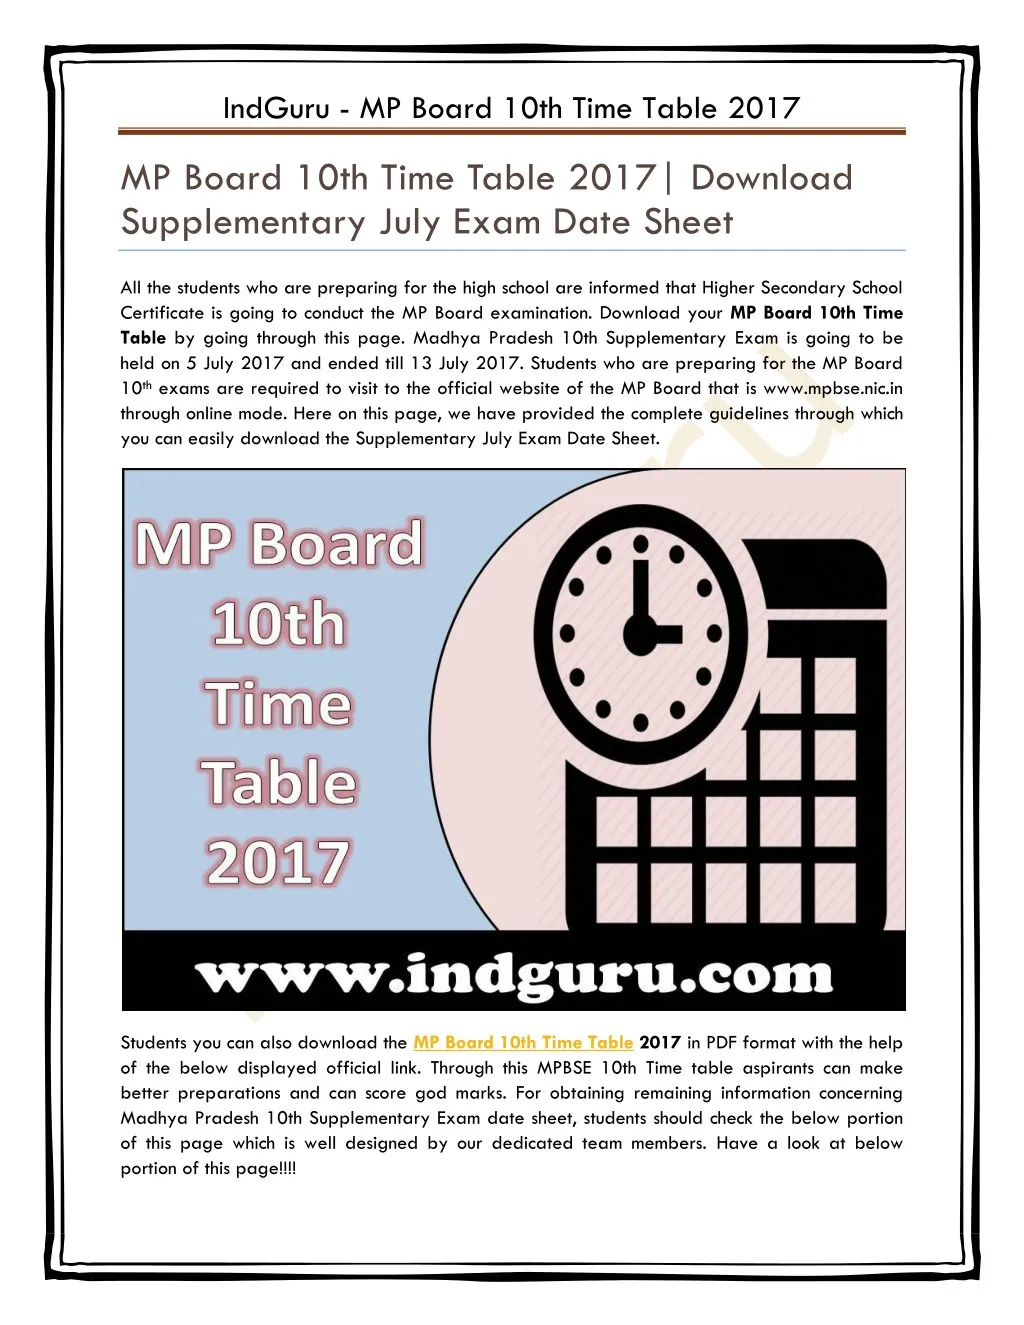 indguru mp board 10th time table 2017